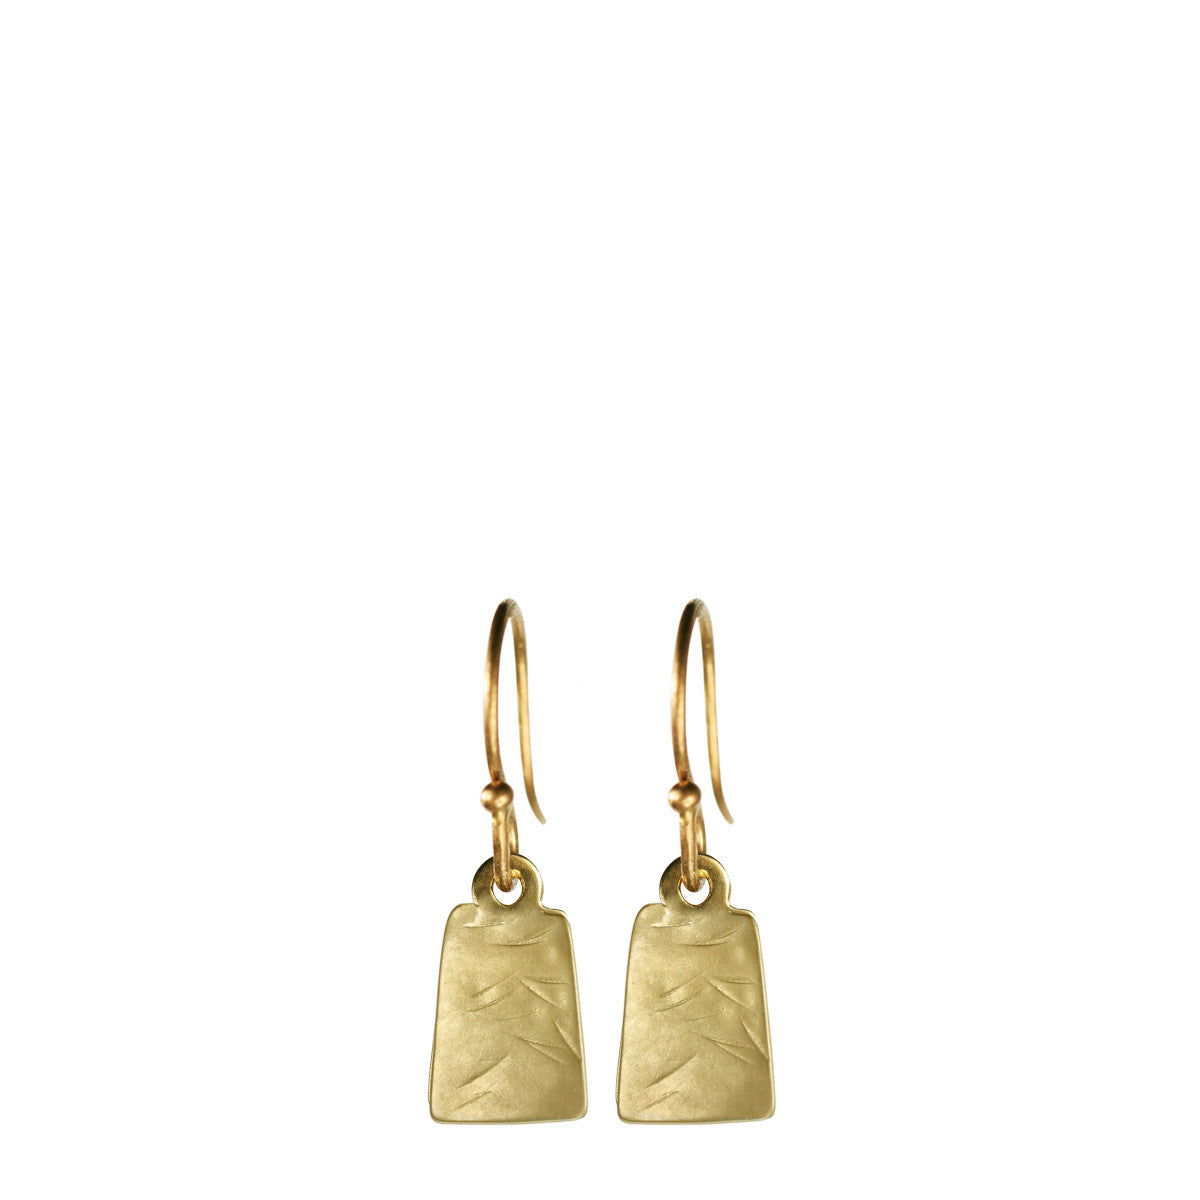 10K Gold Flattened Square Earrings